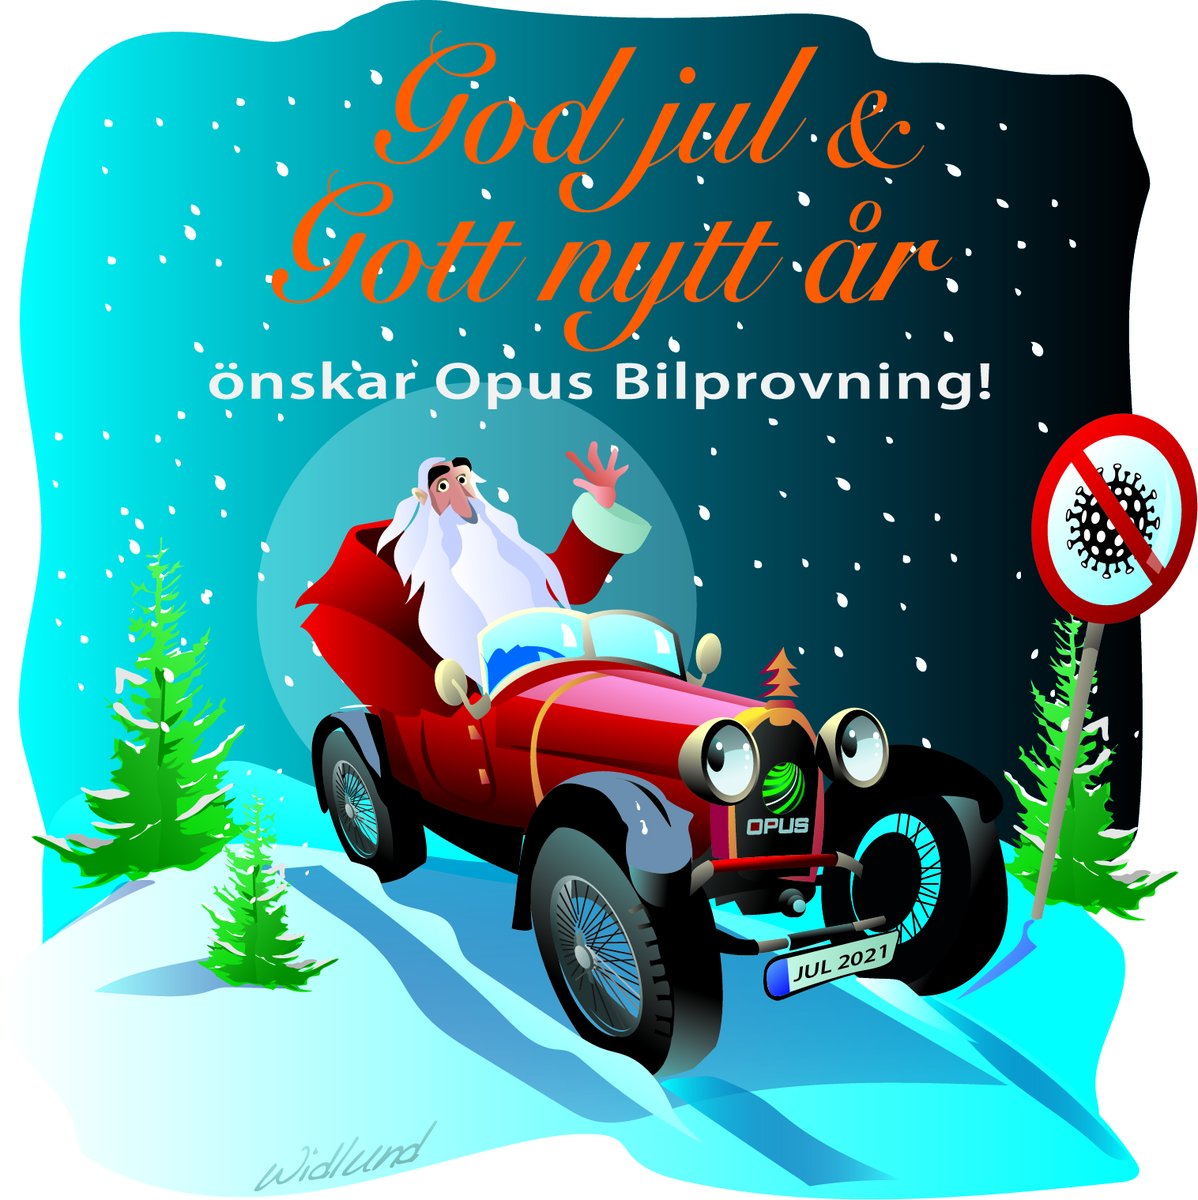 Vi på Opus Bilprovning vill önska er alla en riktigt God Jul &amp; Gott Nytt År! 🎅

PS. Kör försiktigt https://t.co/WLNjYNPJxI